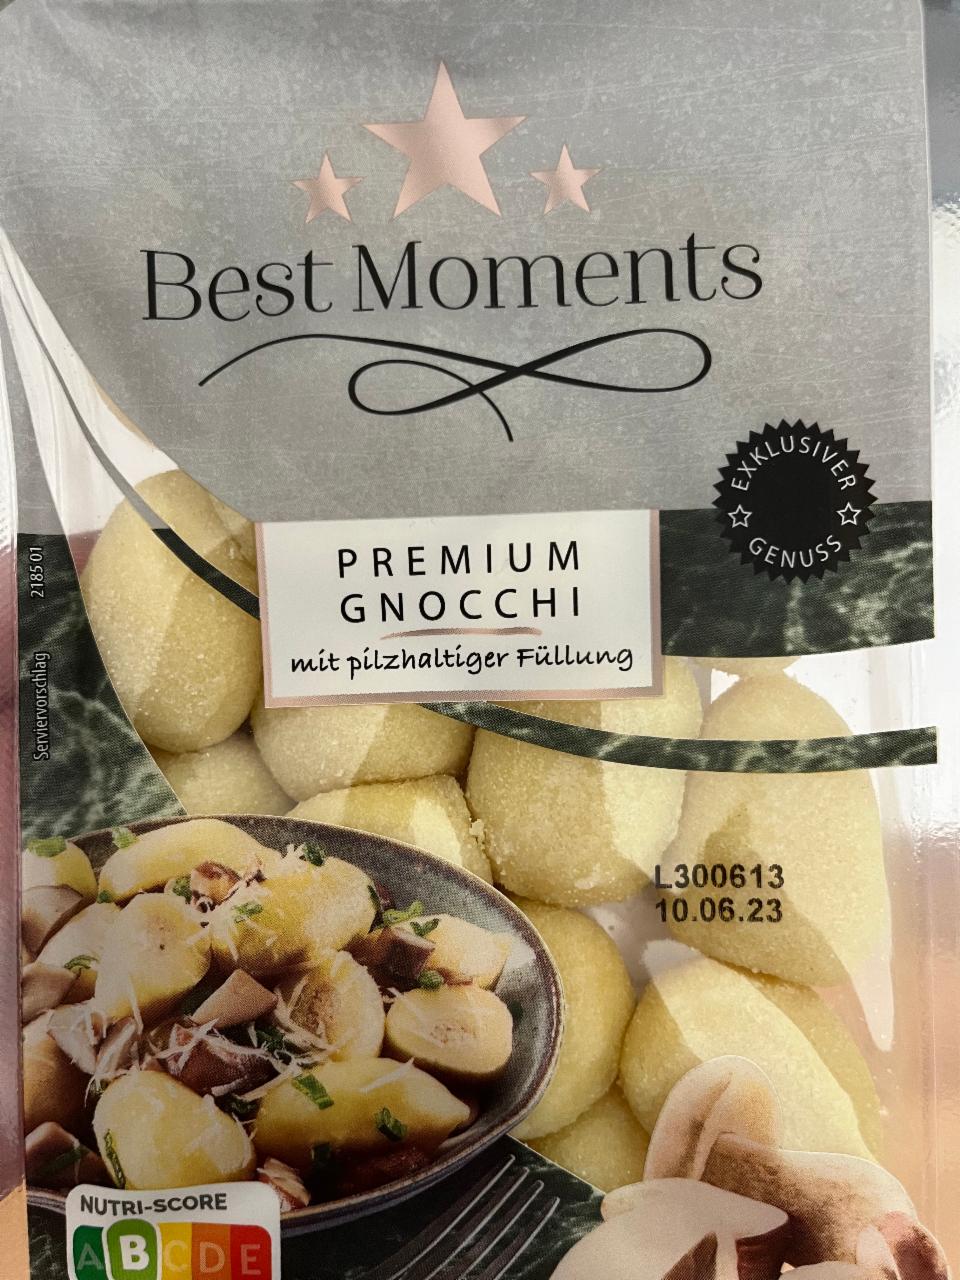 Fotografie - Premium gnocchi mit pilzhaltiger Füllung Best Moments